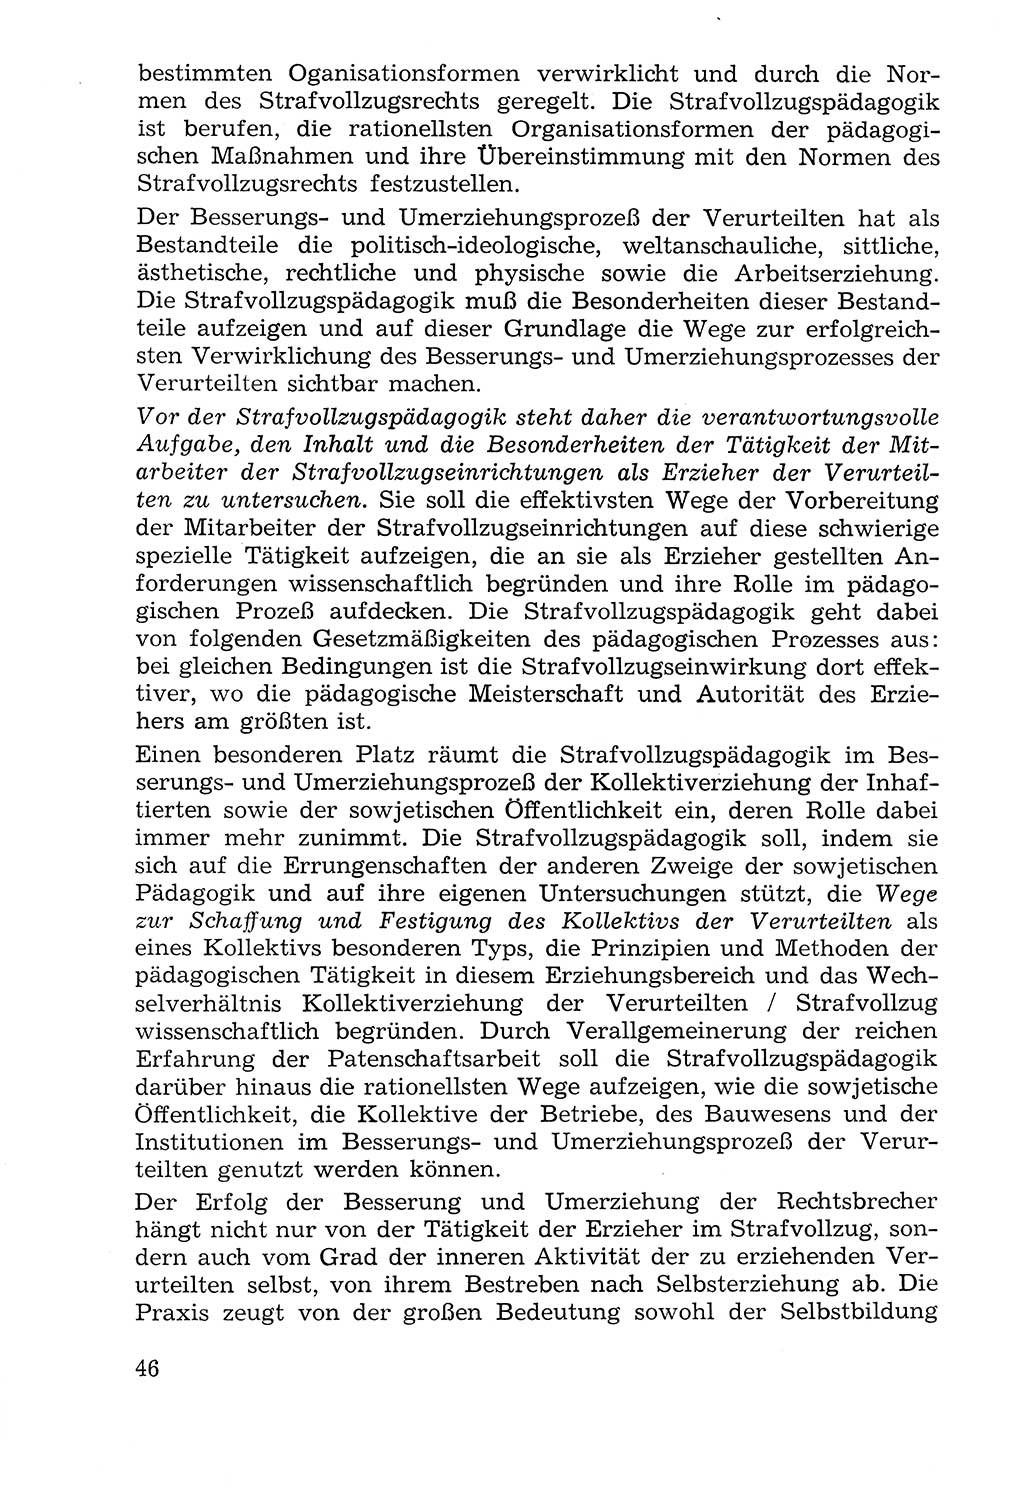 Lehrbuch der Strafvollzugspädagogik [Deutsche Demokratische Republik (DDR)] 1969, Seite 46 (Lb. SV-Pd. DDR 1969, S. 46)